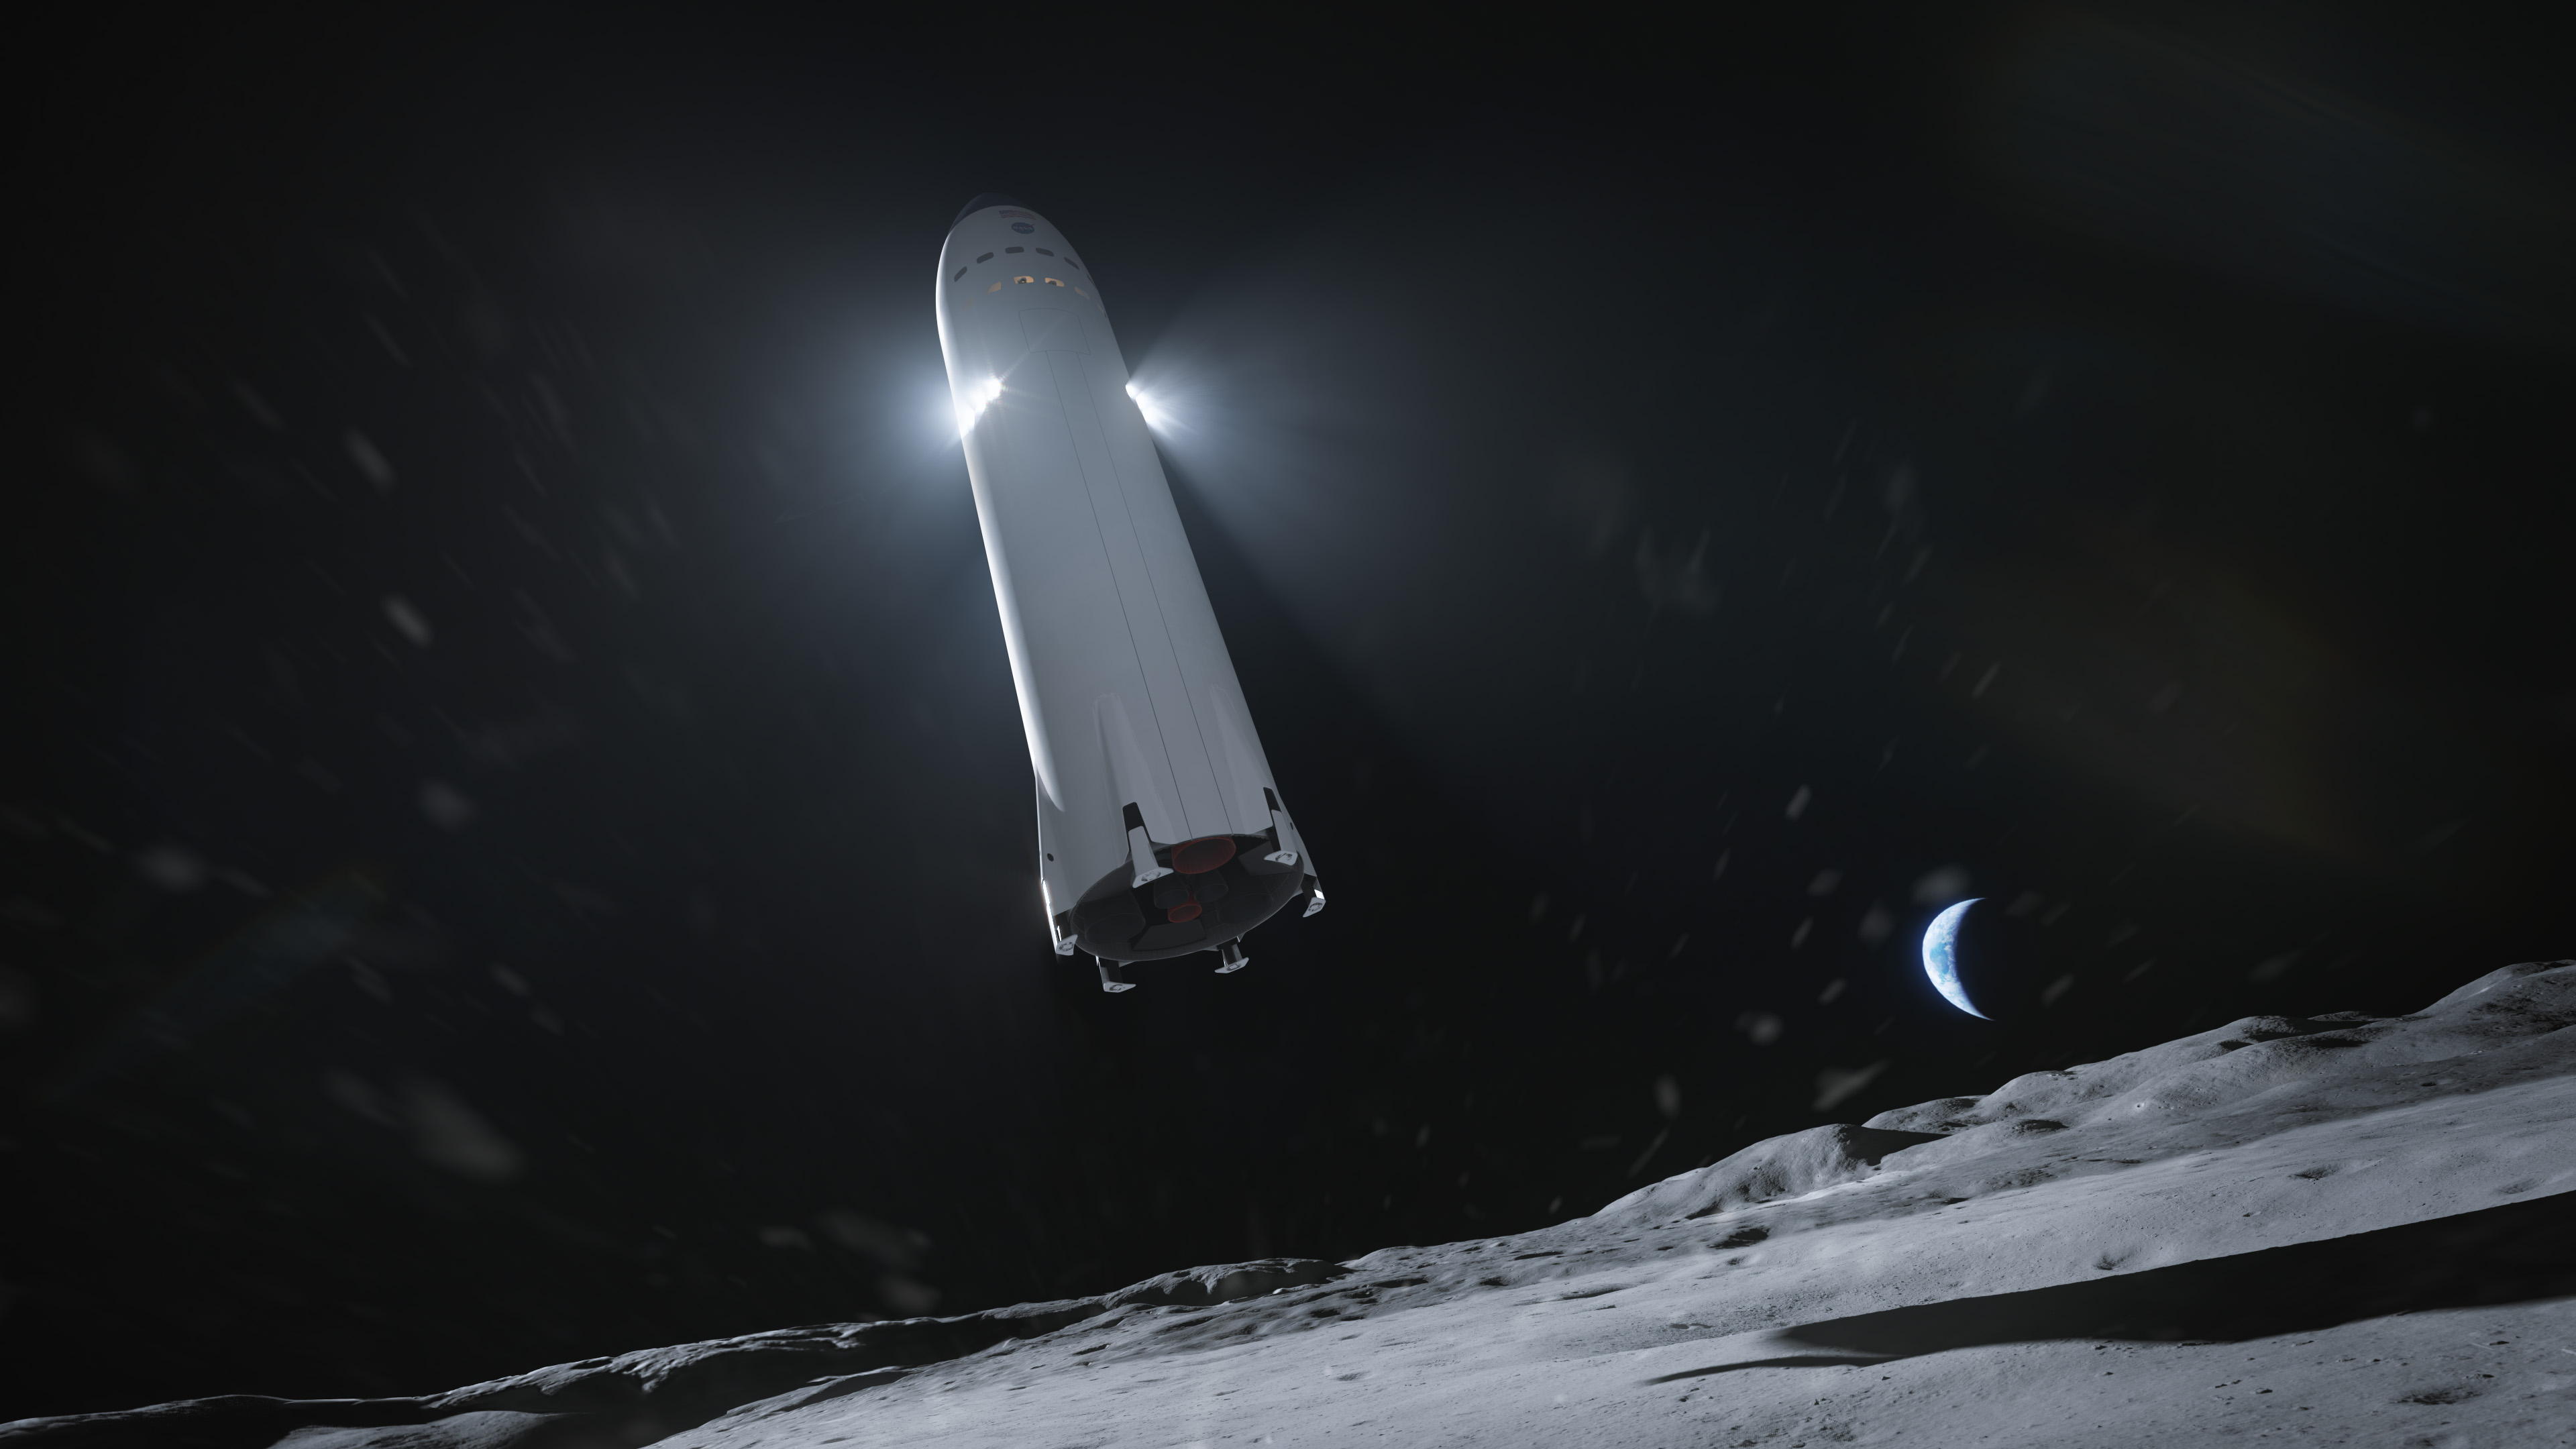 Wizja artystyczna przedstawiająca statek Starship podczas lądowania na Księżycu zaprezentowana po ogłoszeniu wstępnych kontraktów w kwietniu 2020 roku (Źródło: SpaceX)